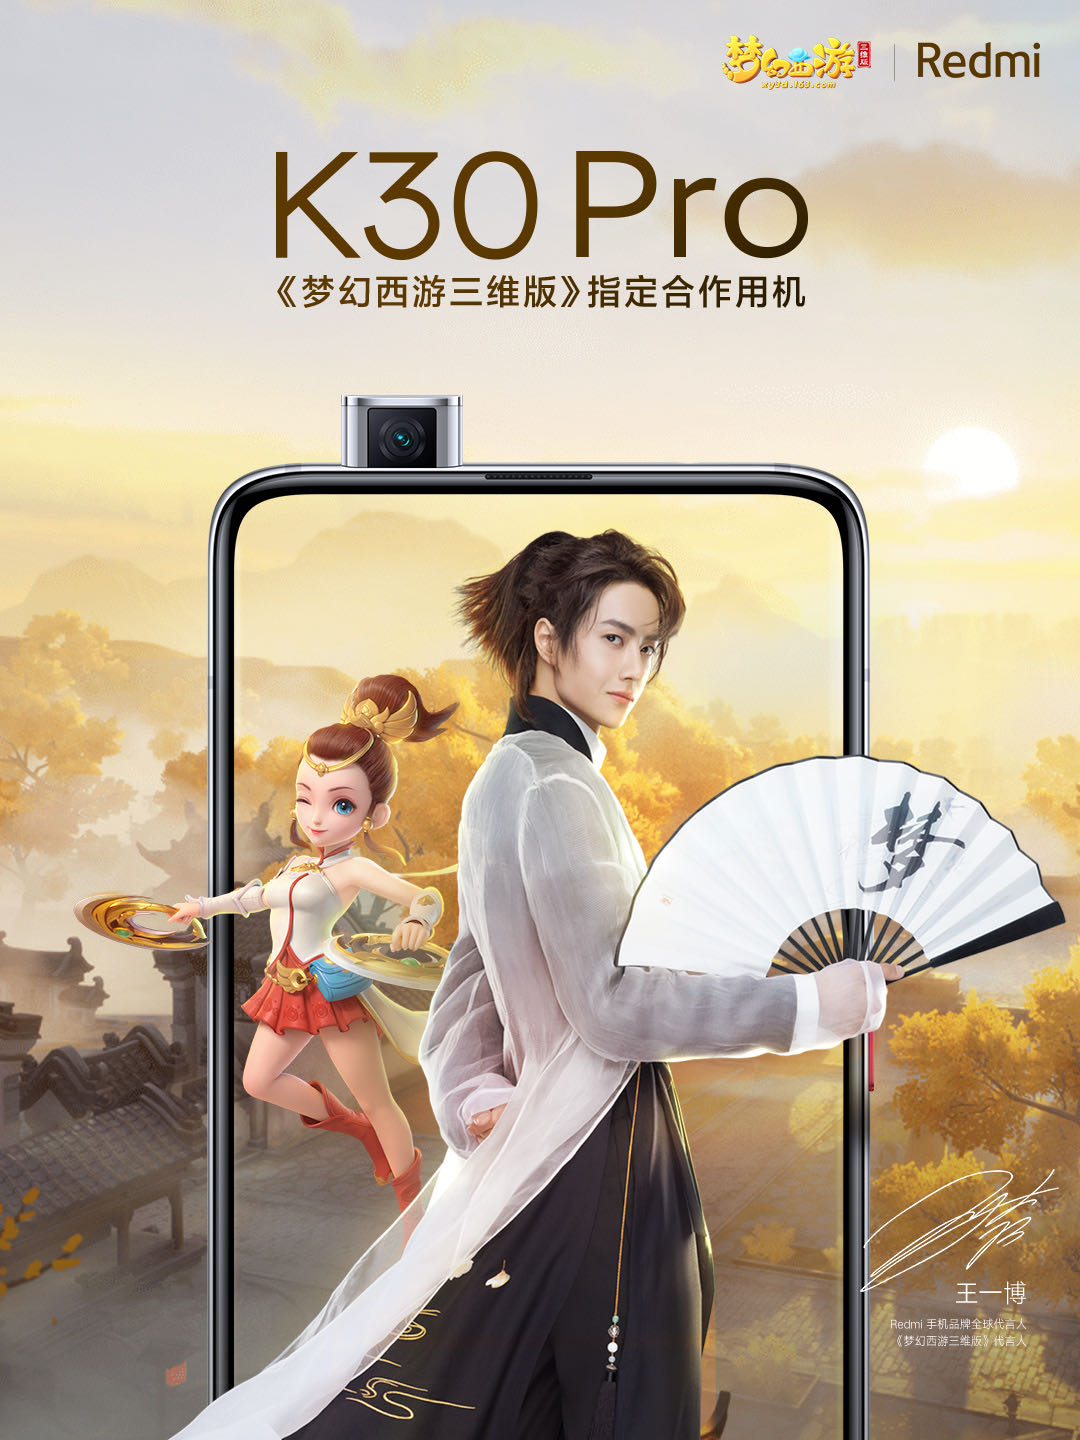 以三界之美为酷爱一博 Redmi K30 Pro至臻呈现《梦幻西游三维版》